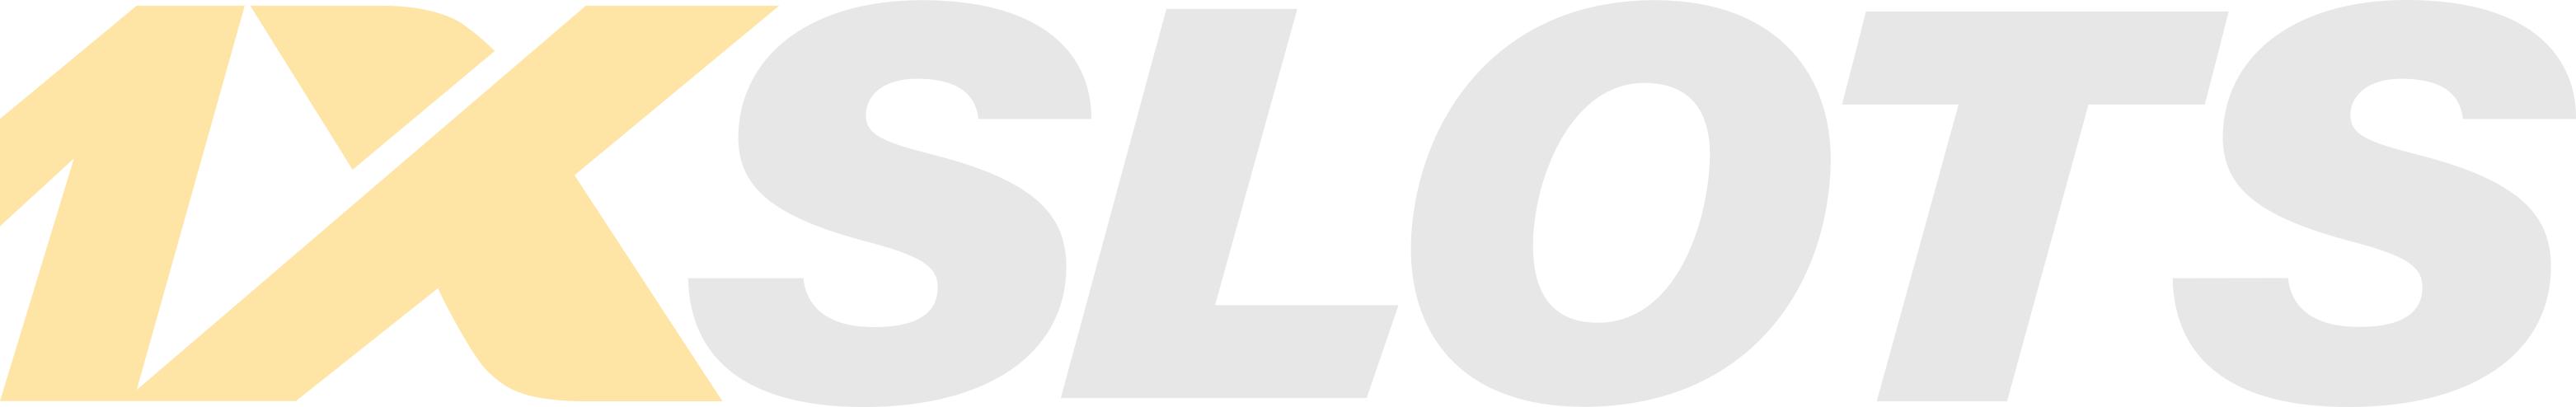 1xSlots - Company logo